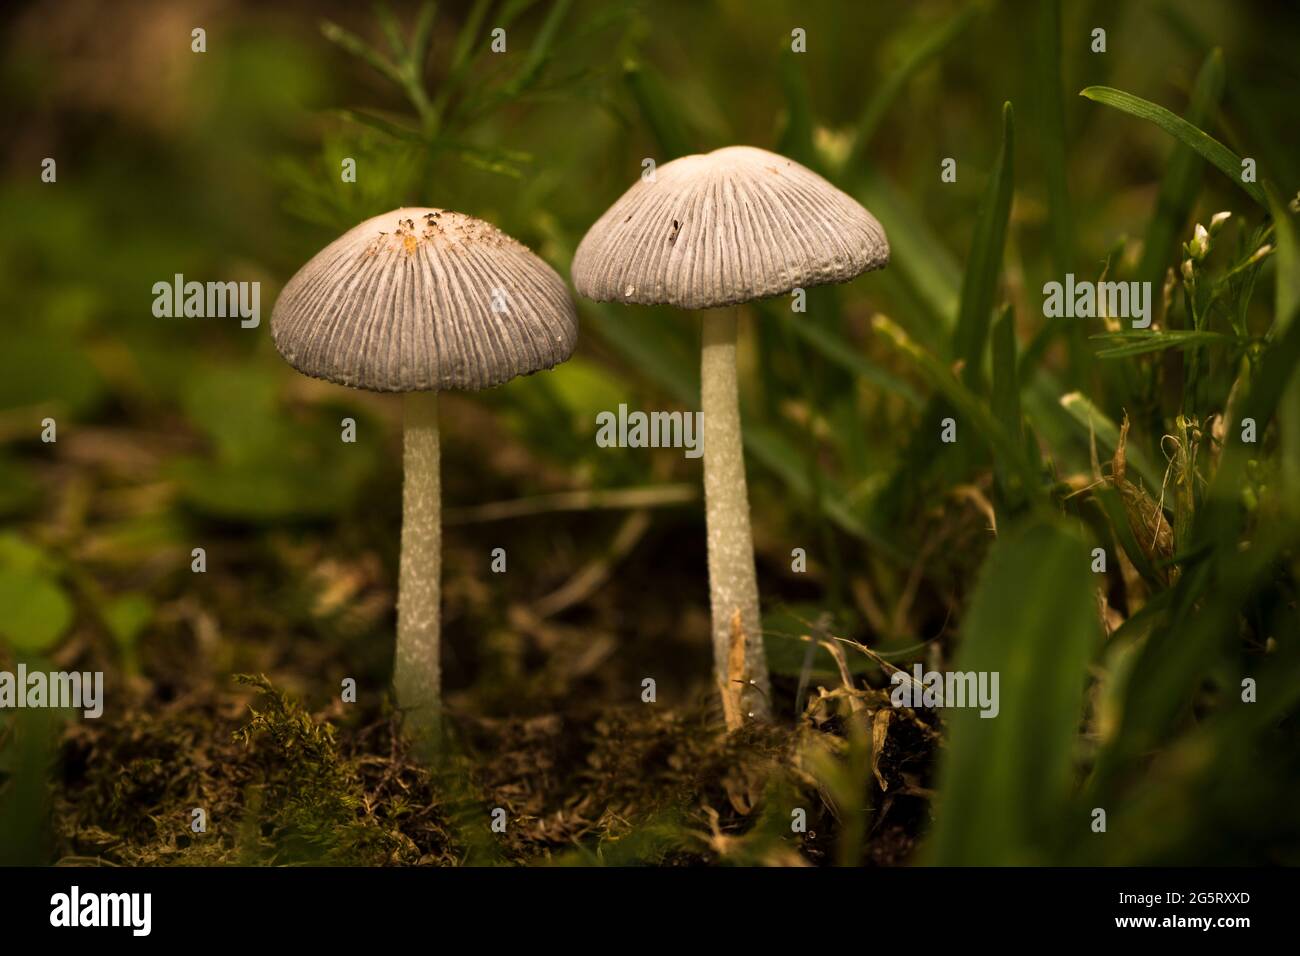 Paire de petits champignons dans le sol - macro shot Banque D'Images